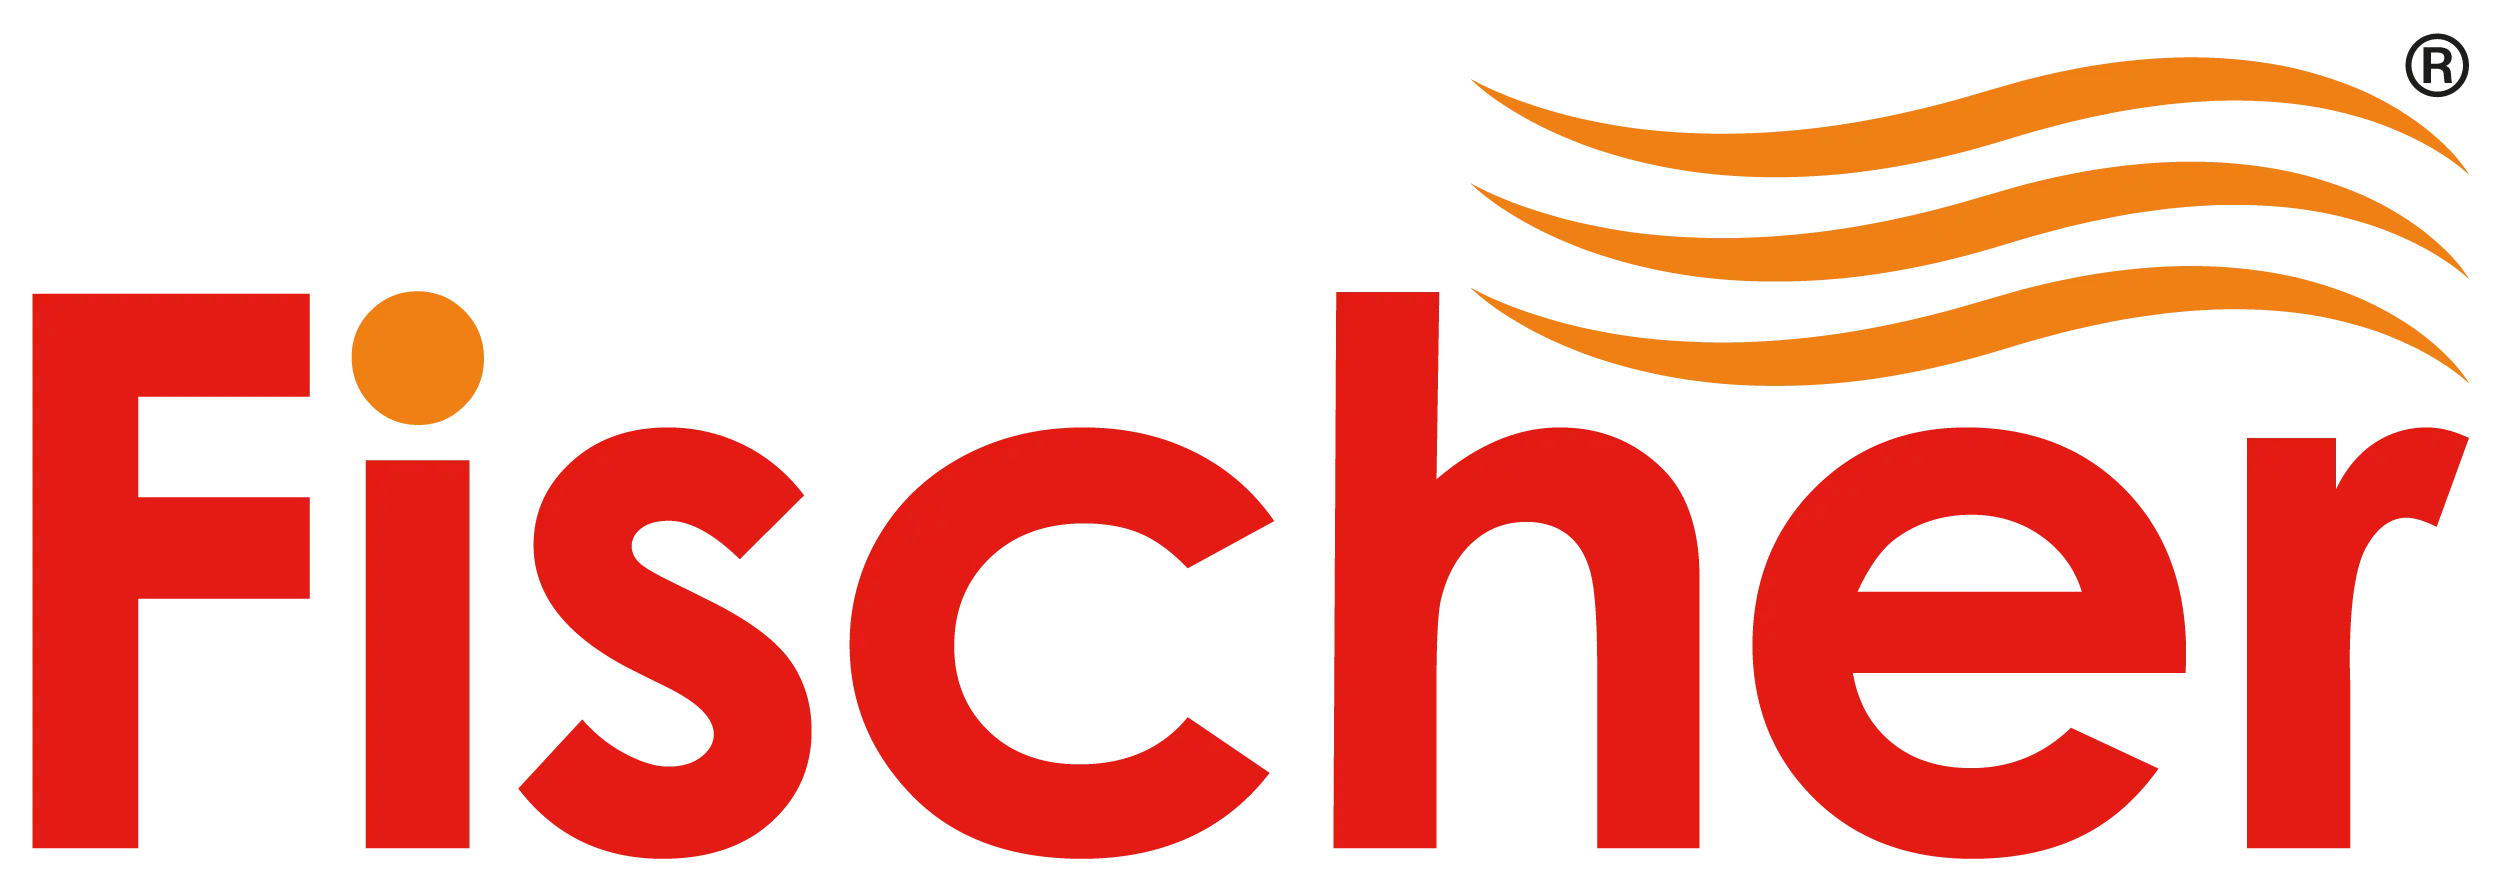 Fischer Electric